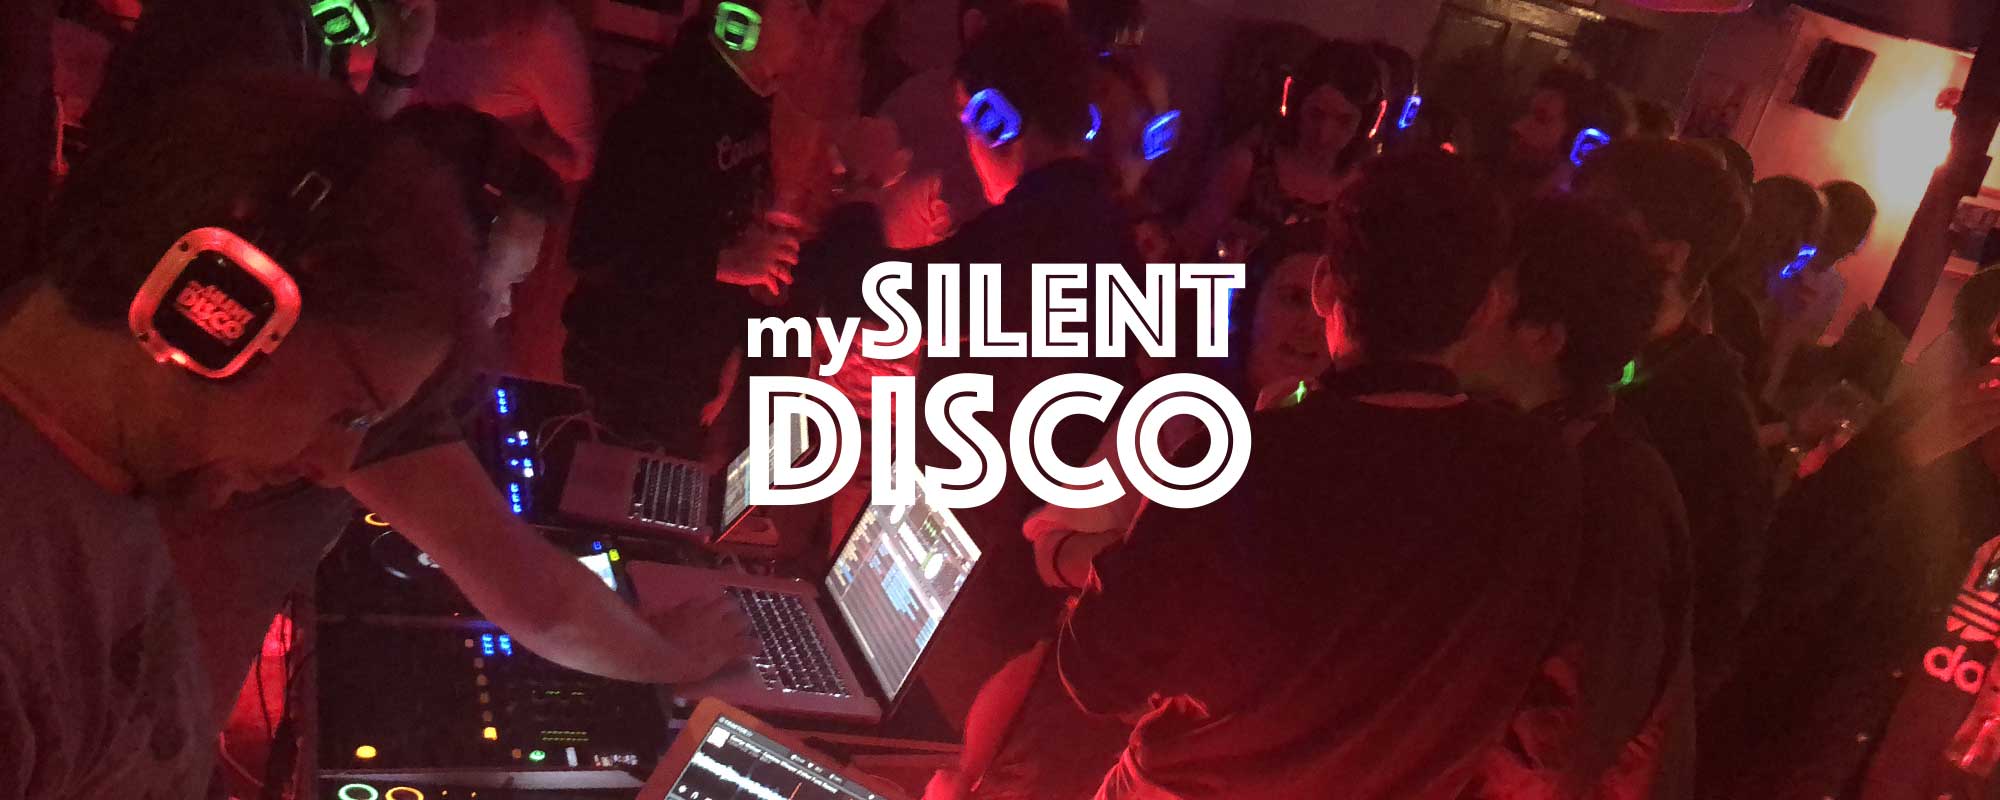 Indoor silent disco event with DJ